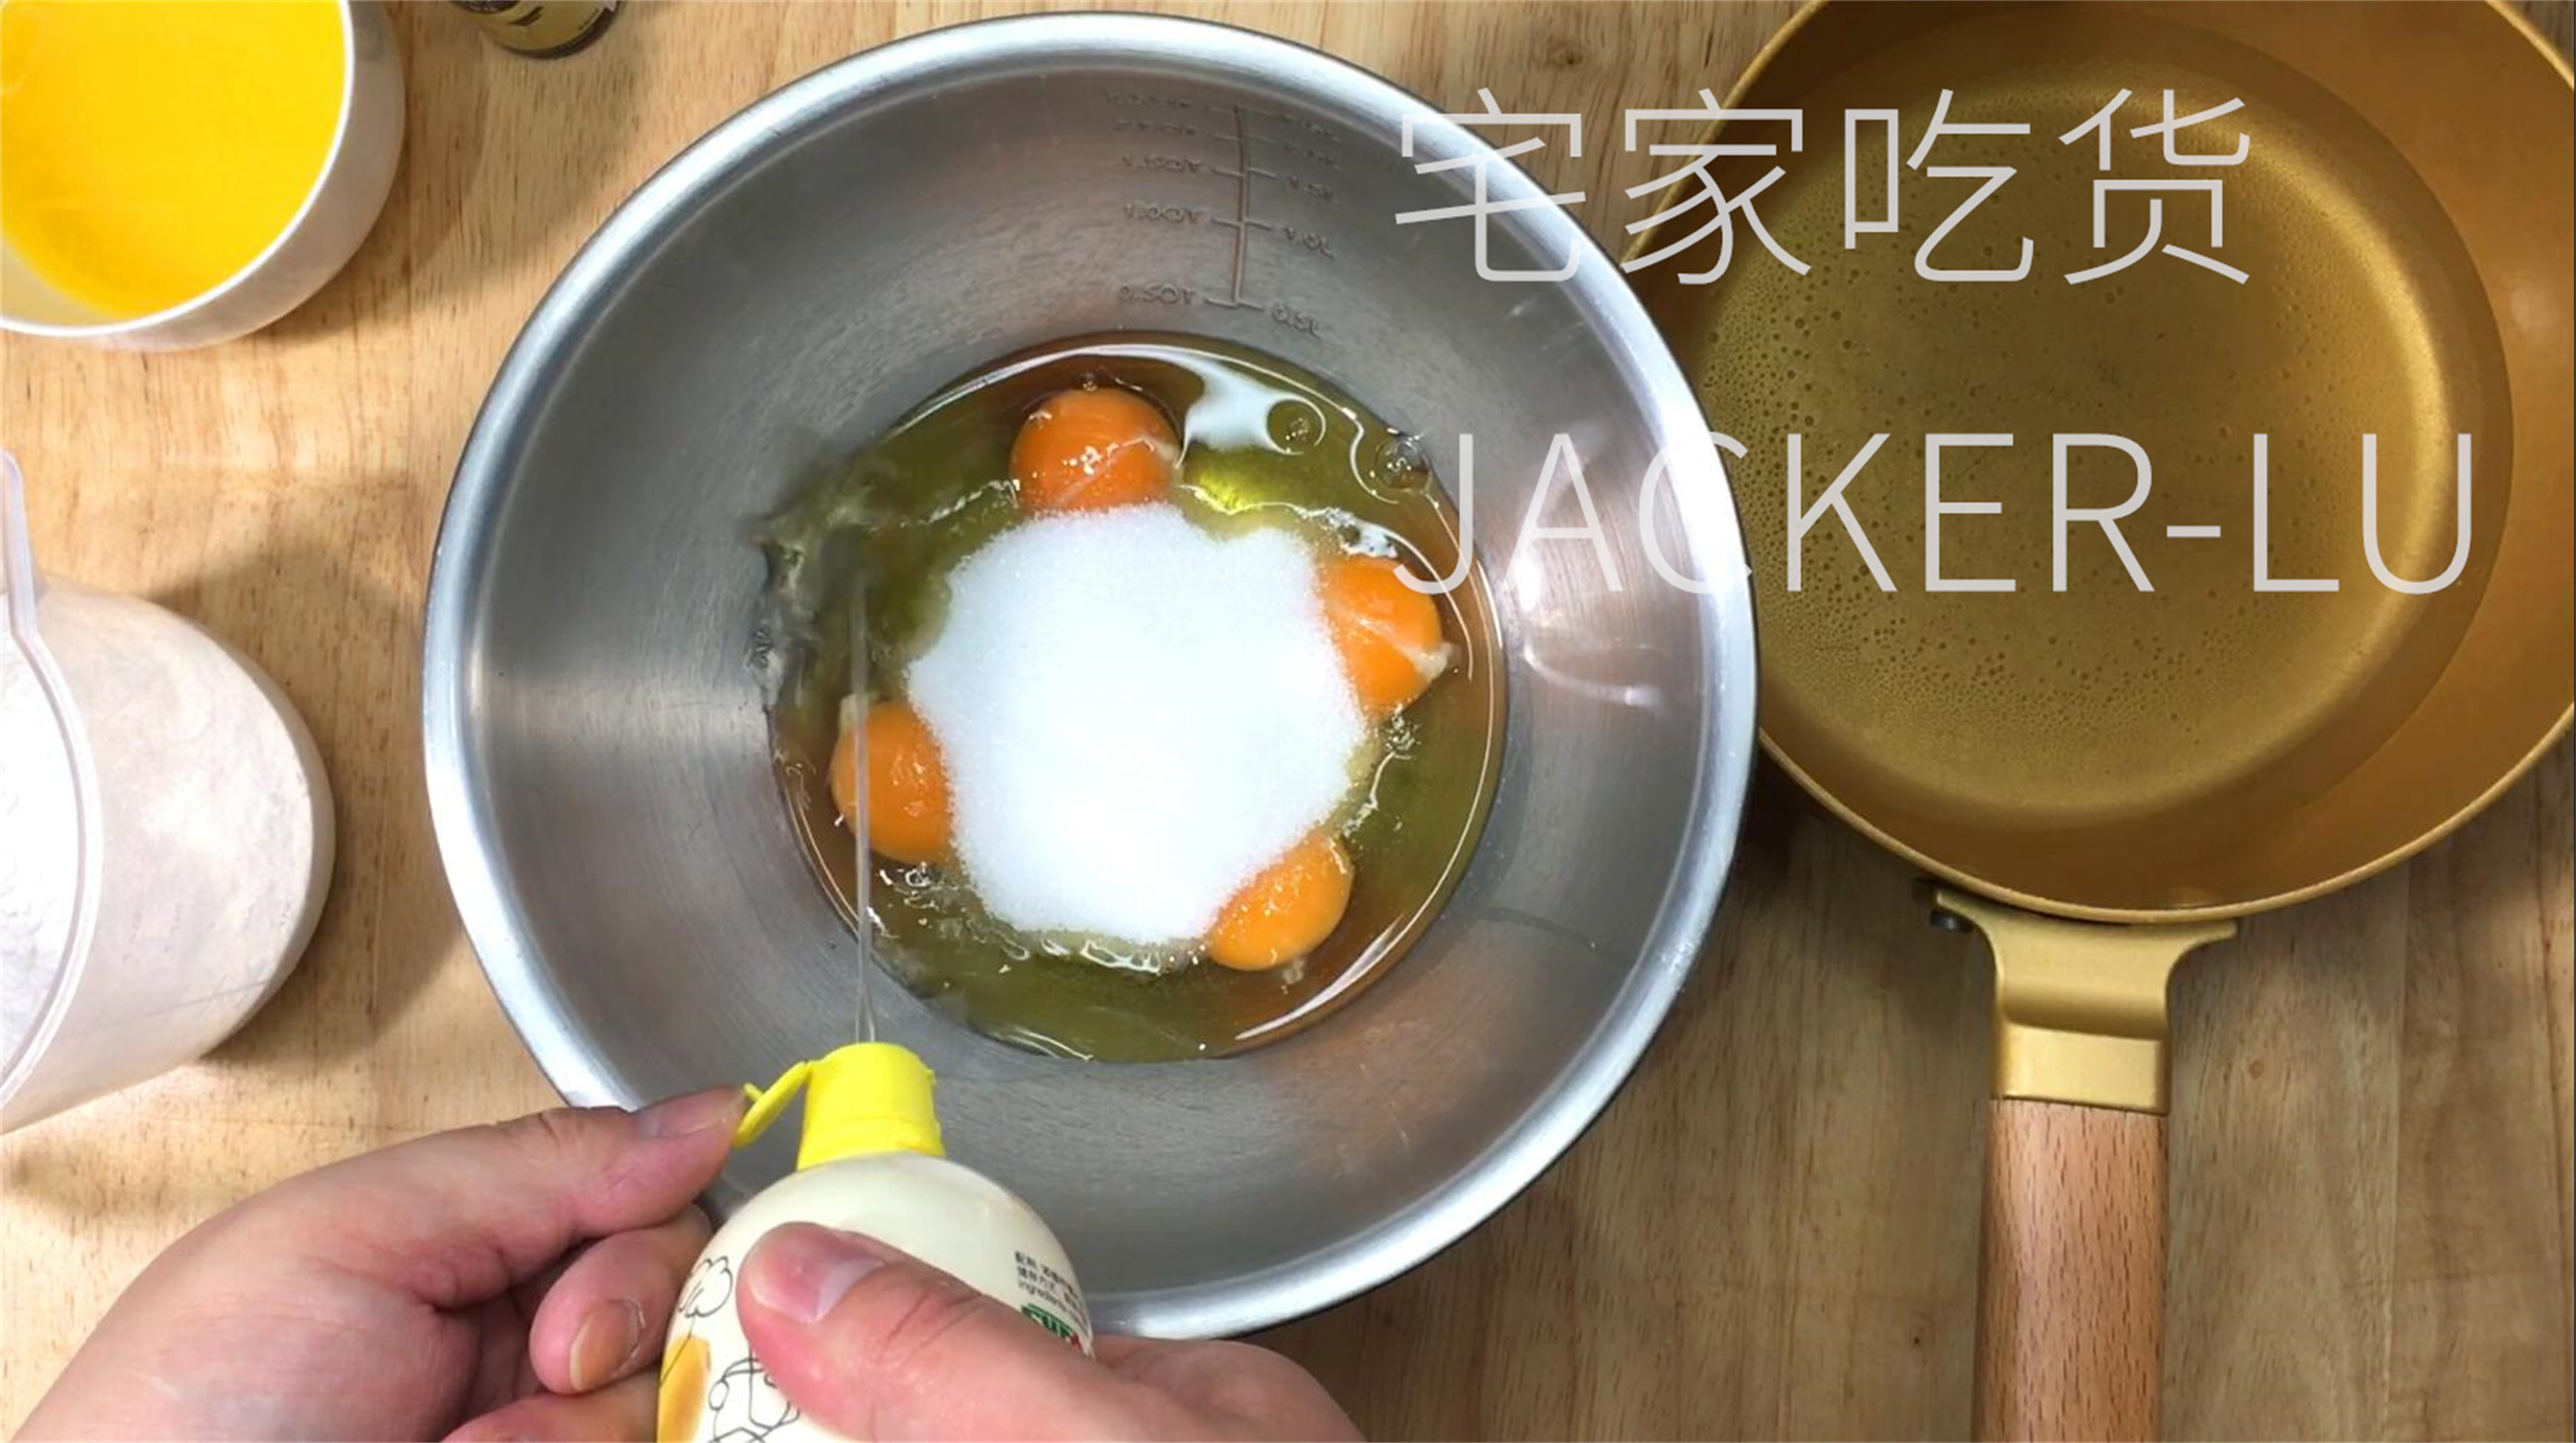 巨量鸡蛋制作的韩国巨型卡斯特拉蛋糕-吃遍N个地球-吃遍N个地球-哔哩哔哩视频